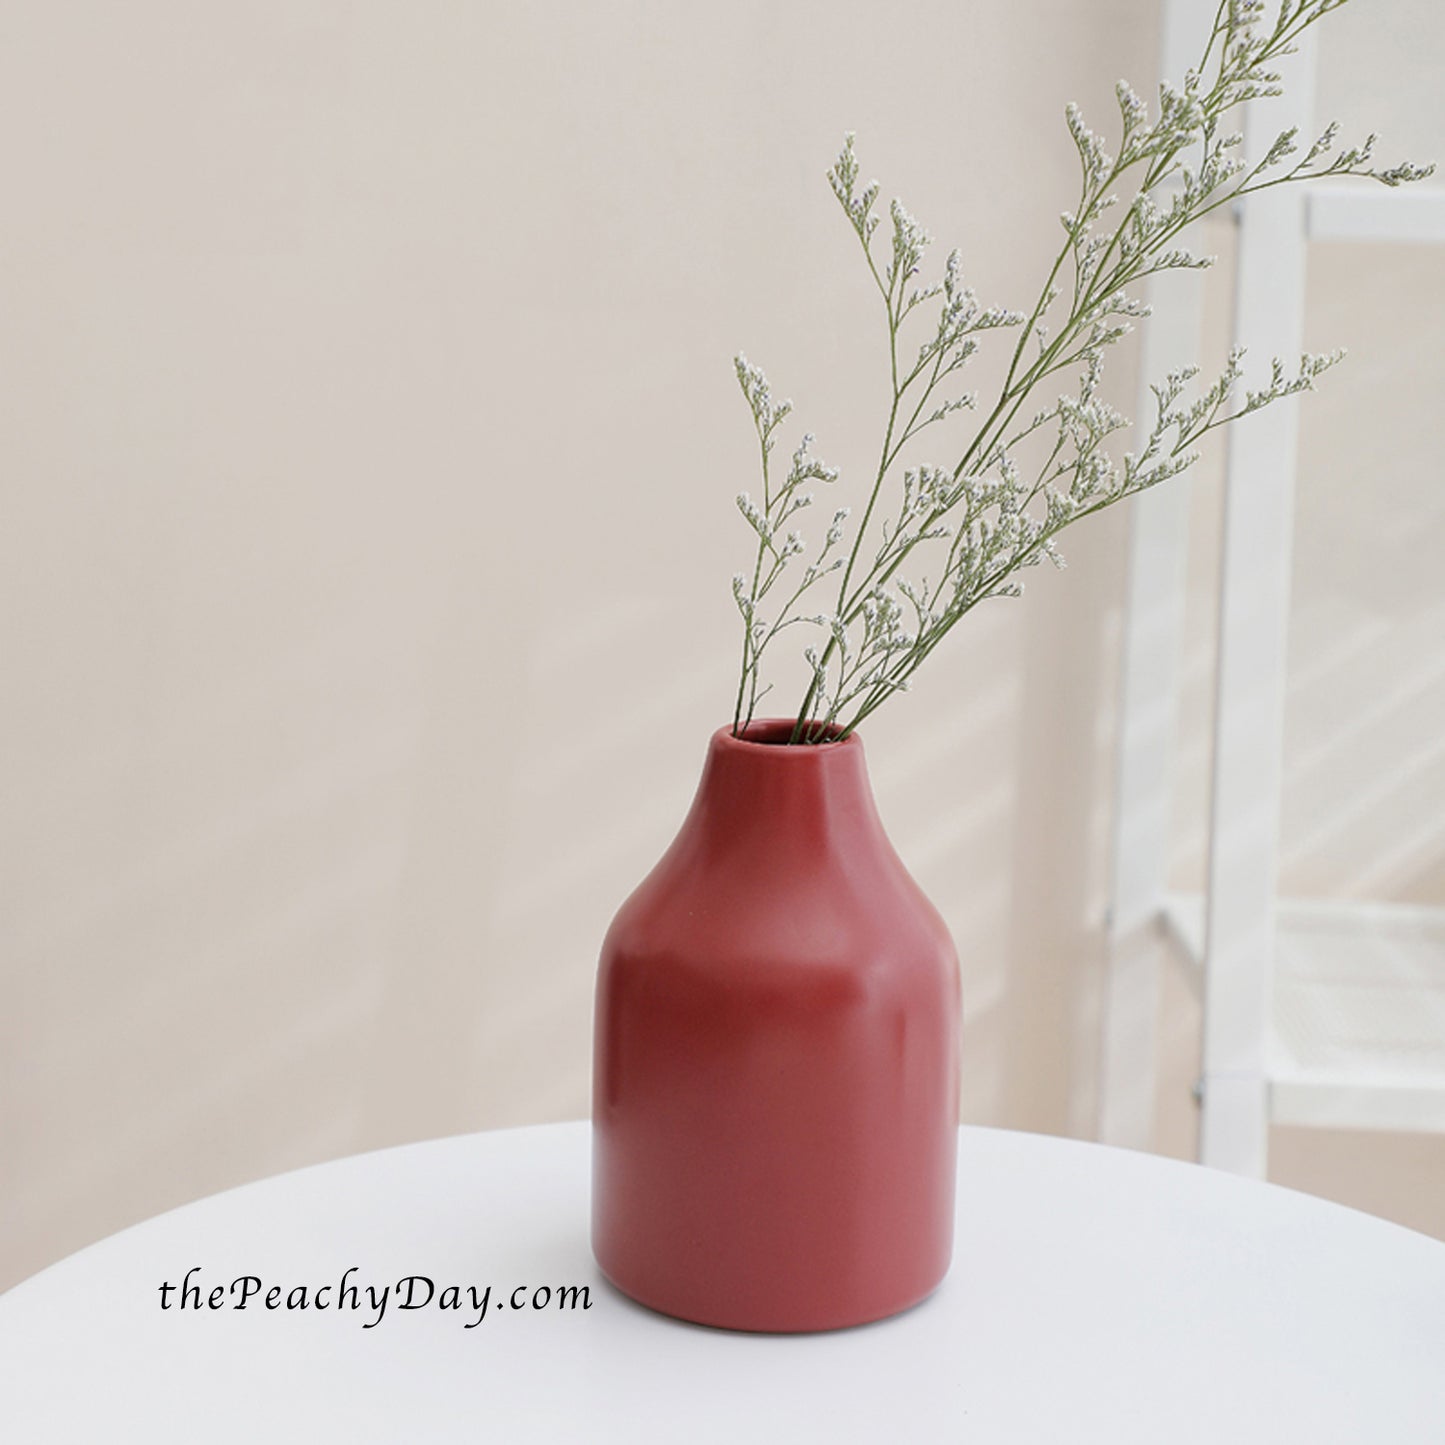 Colorful Ceramic Bud Vase